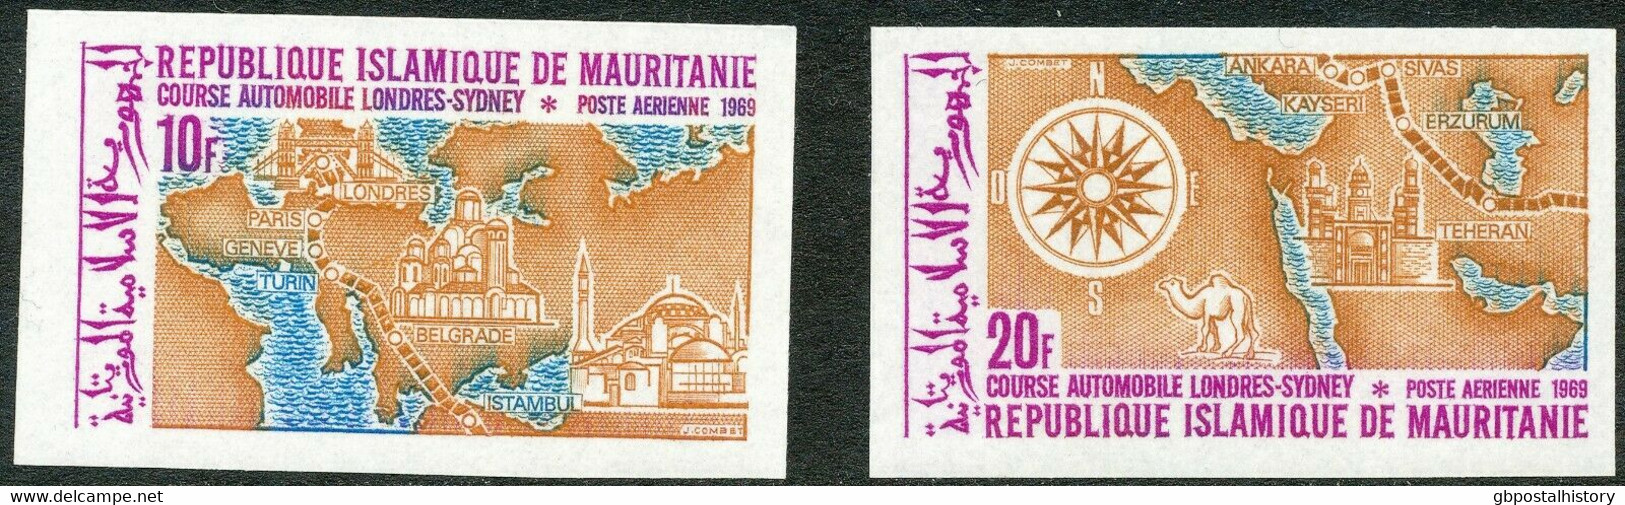 MAURETANIEN 1969 Transkontinentale Autorallye London-Sydney U/M Set IMPERFORATED - Mauritanië (1960-...)